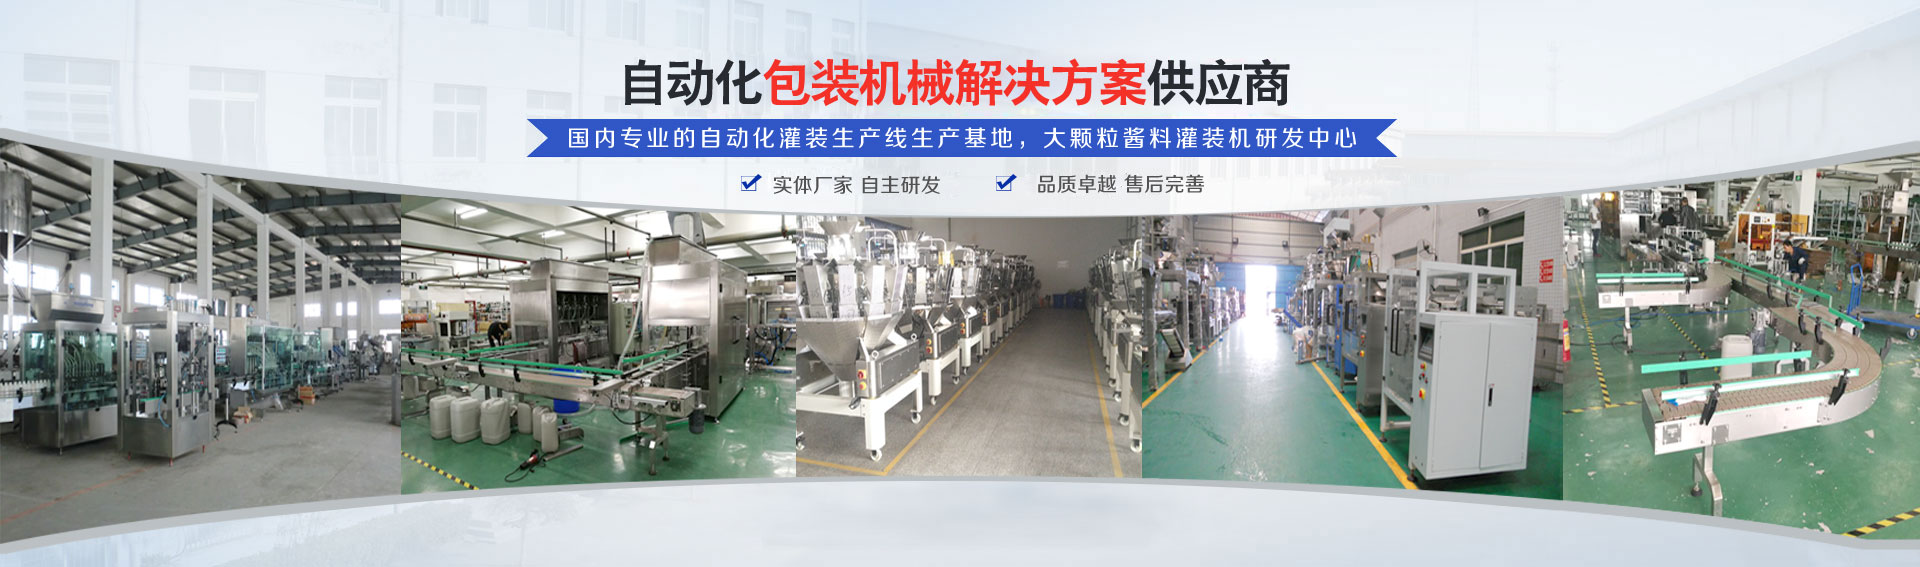 专(zhuan)业的(de)自动化灌装(zhuang)机生产线研发基地(di)